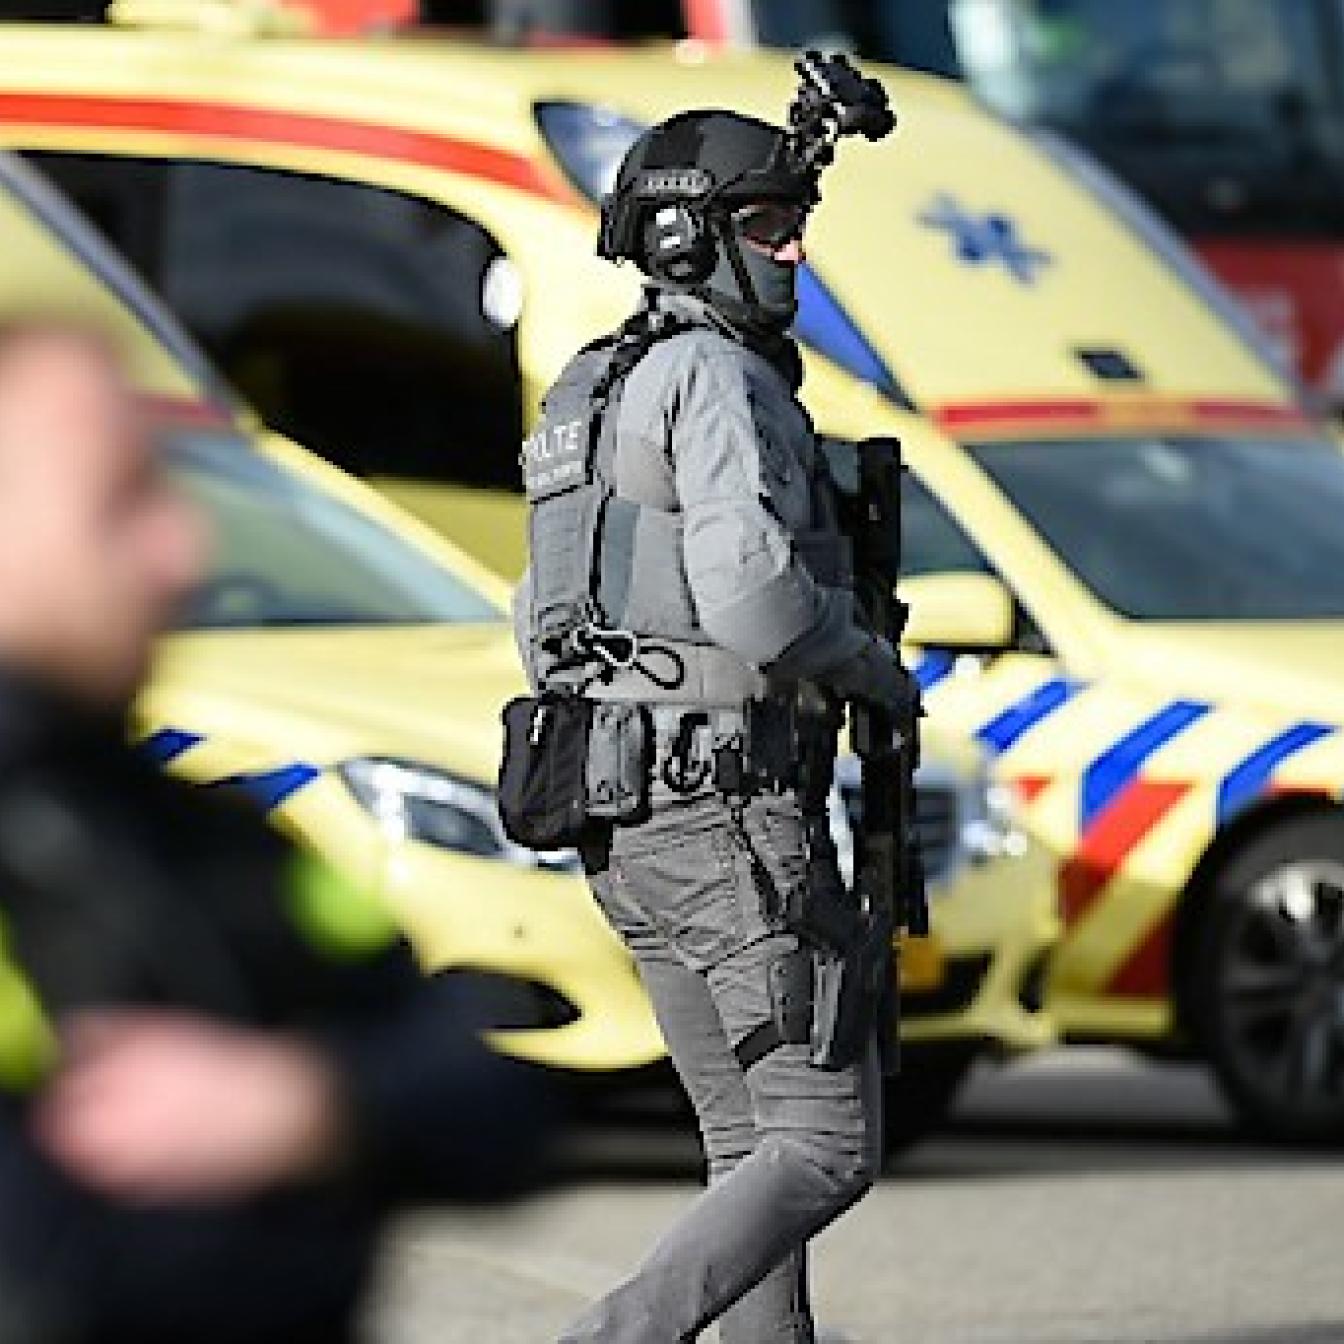 Niederländischer Polizist vor Rettungsautos.